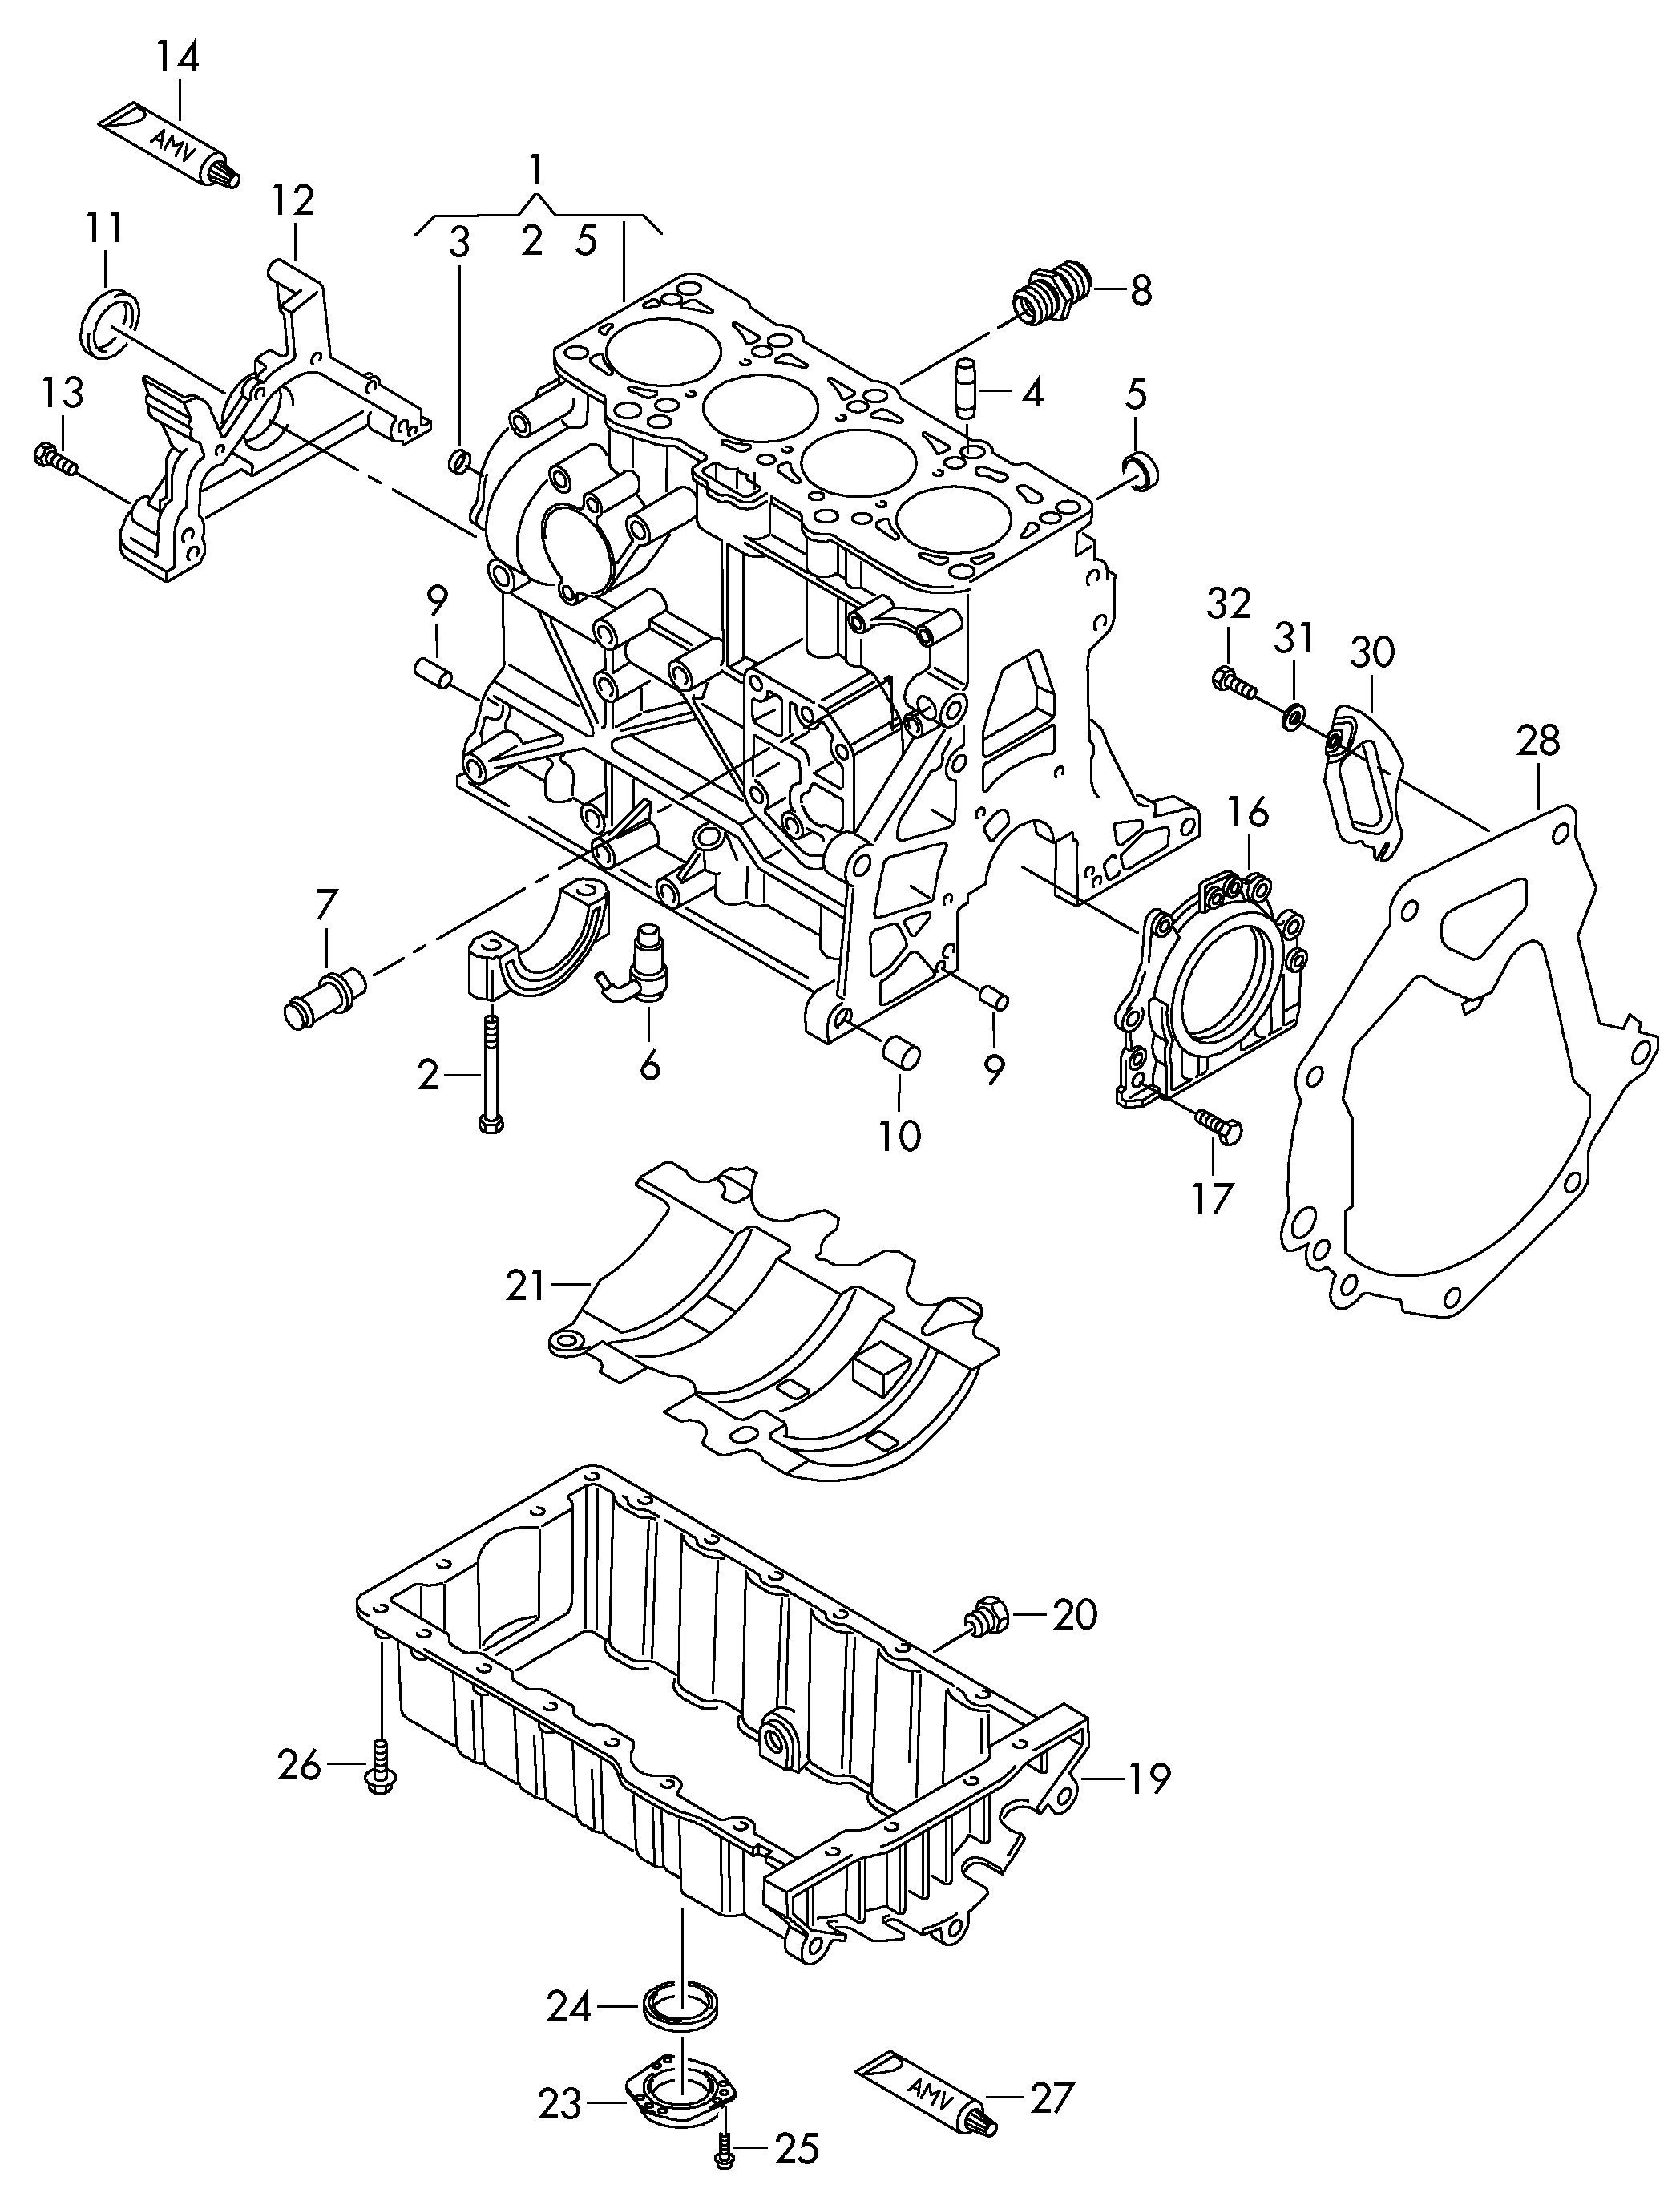 Carter-moteurcarter dhuile 2,0l - Transporter - tr